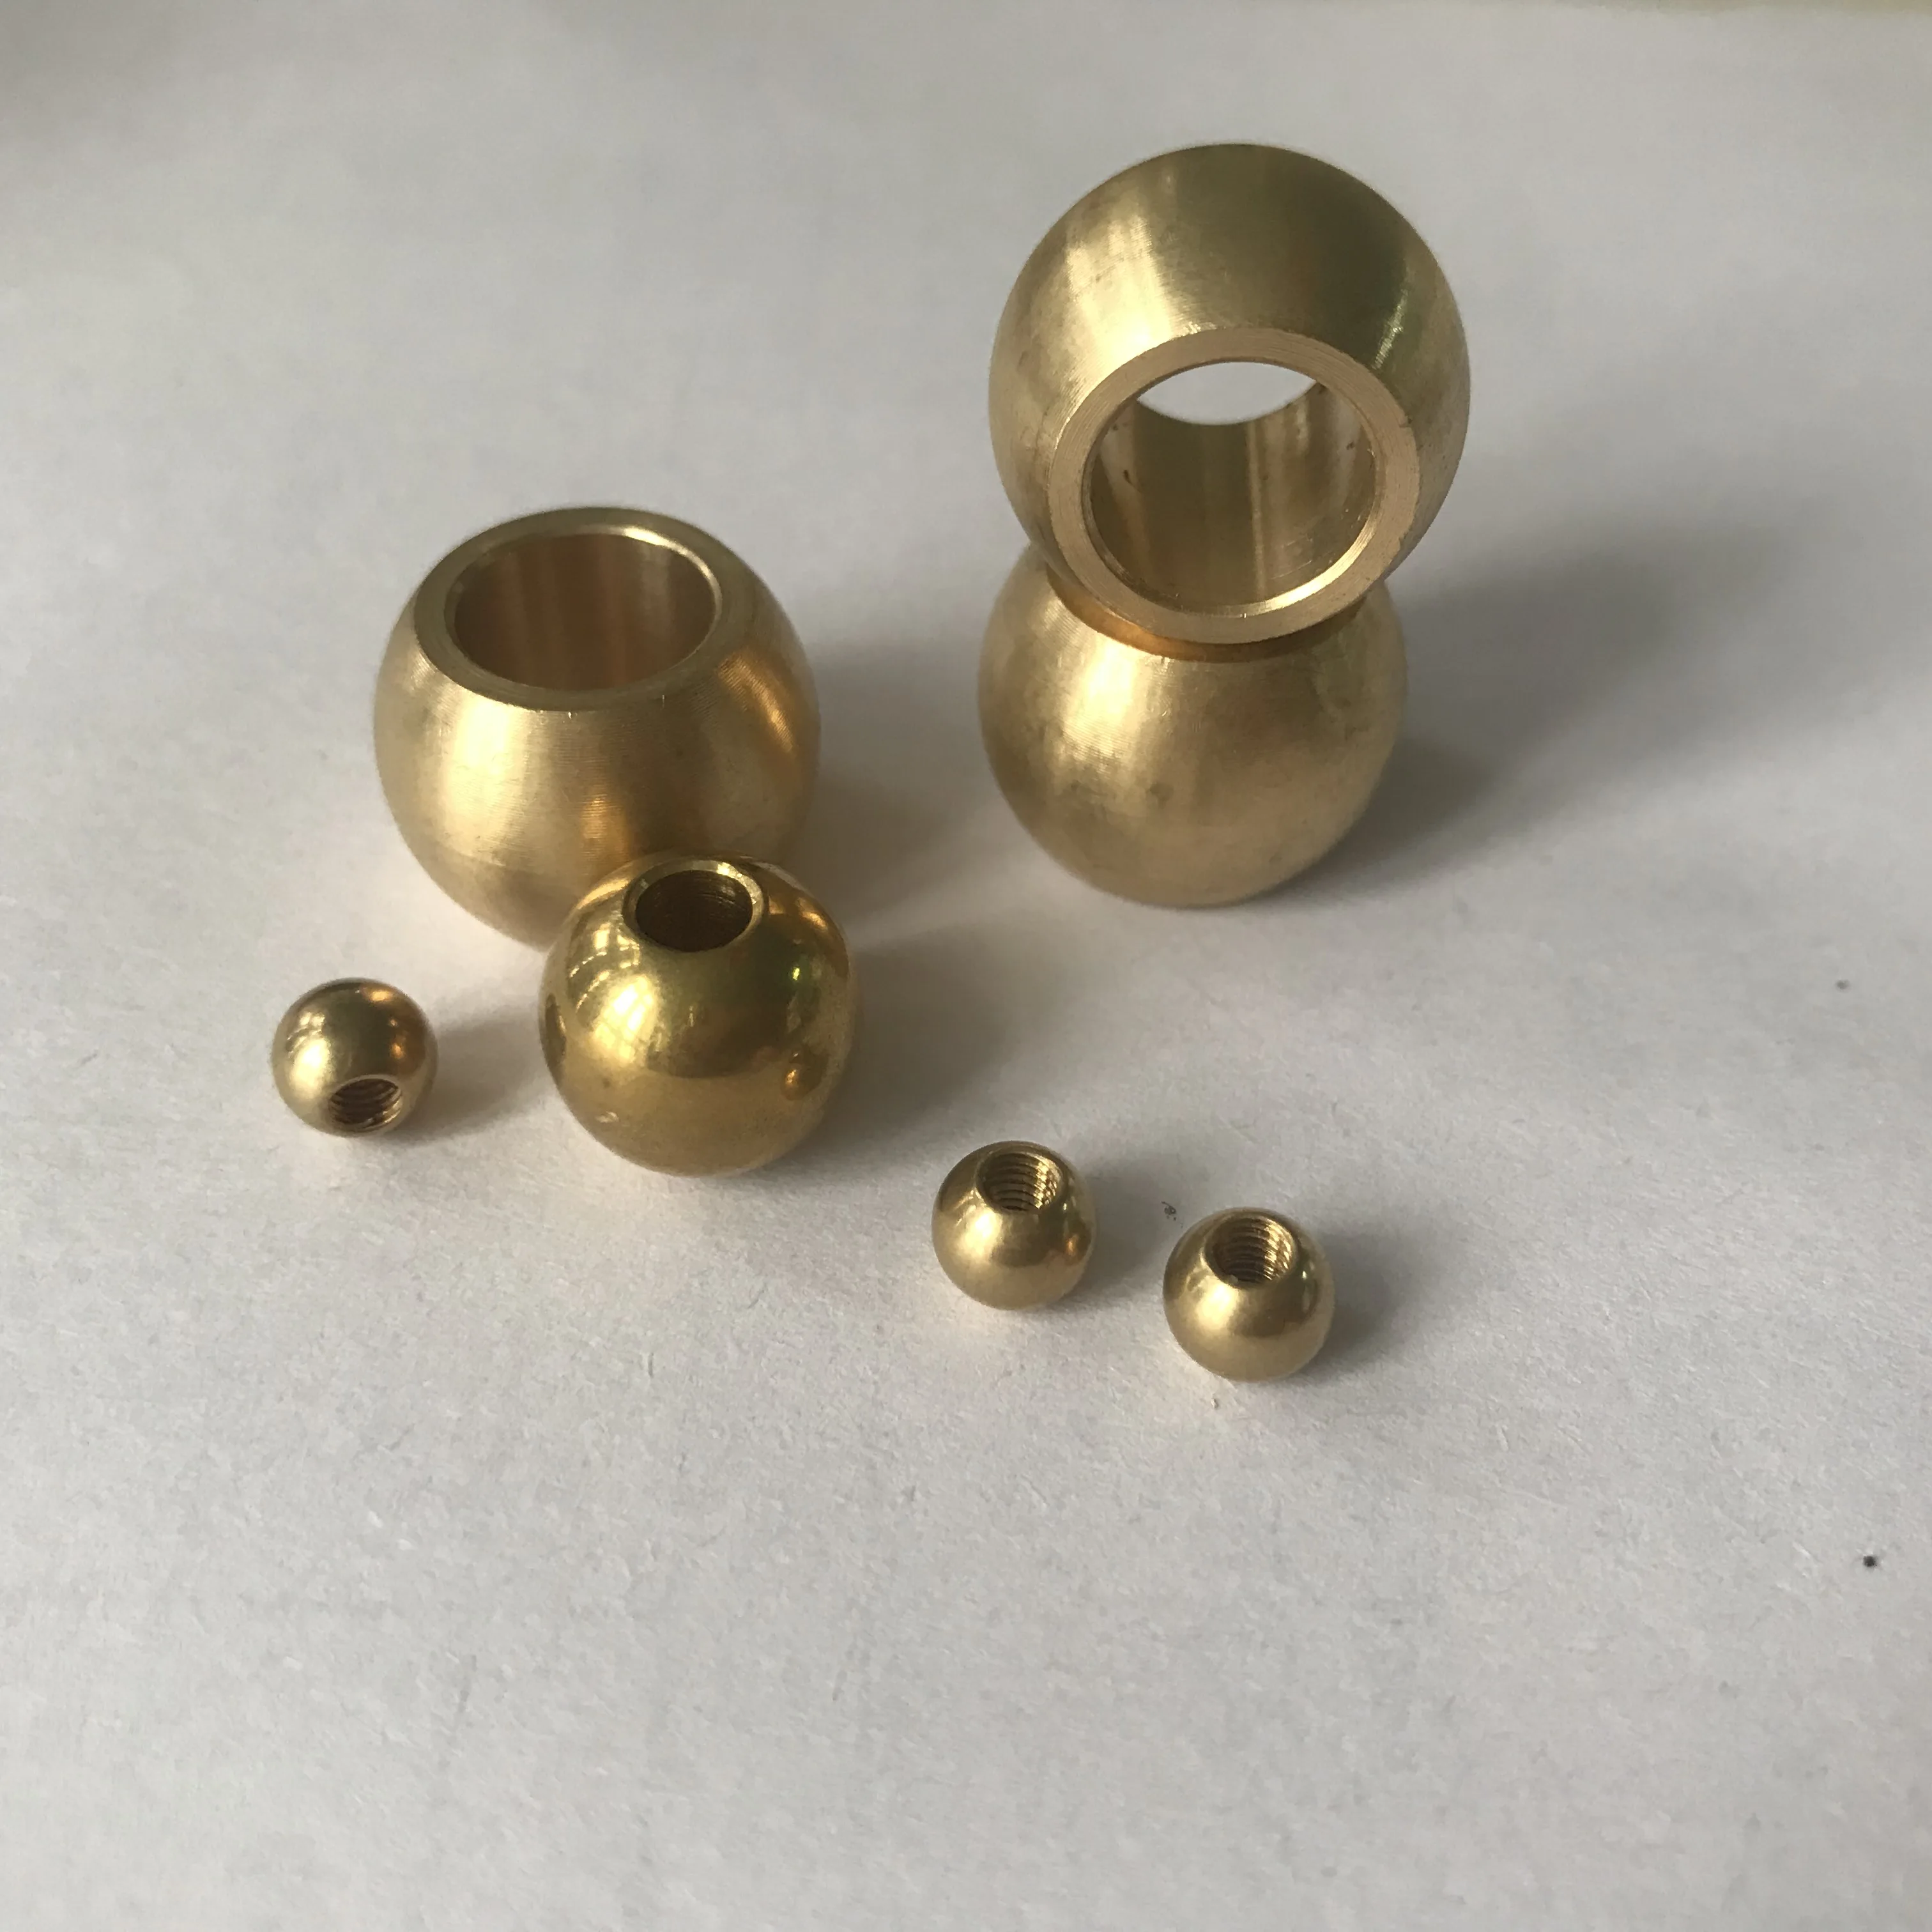 China Brass Ball Manufacturer and Supplier - Lixin